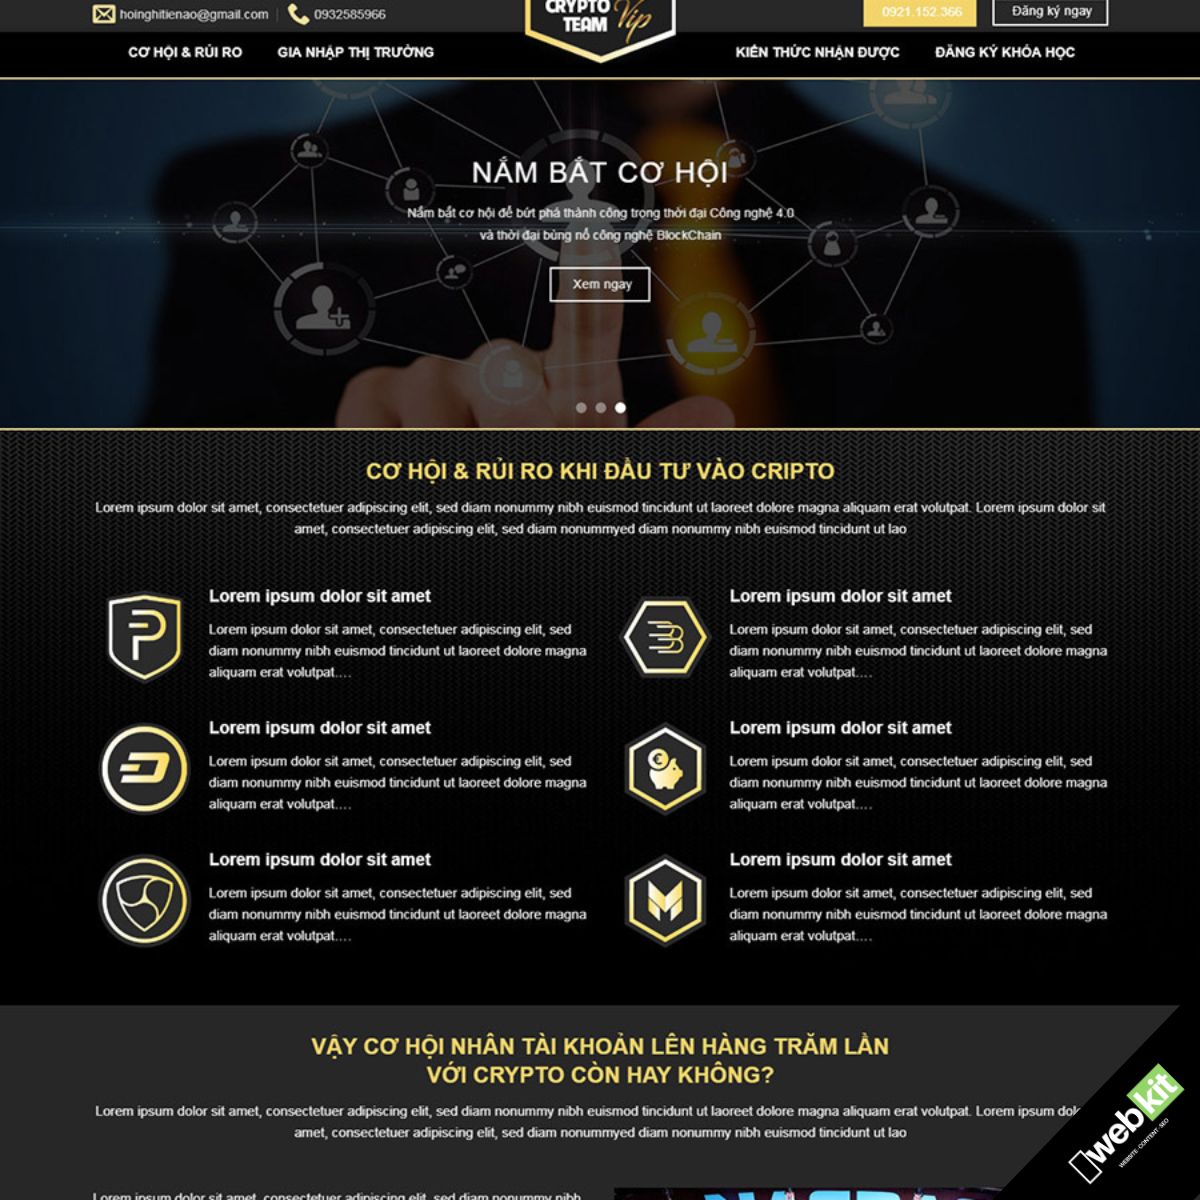 Thiết kế website giới thiệu dịch vụ crypto, tiền ảo - WebKit 6140